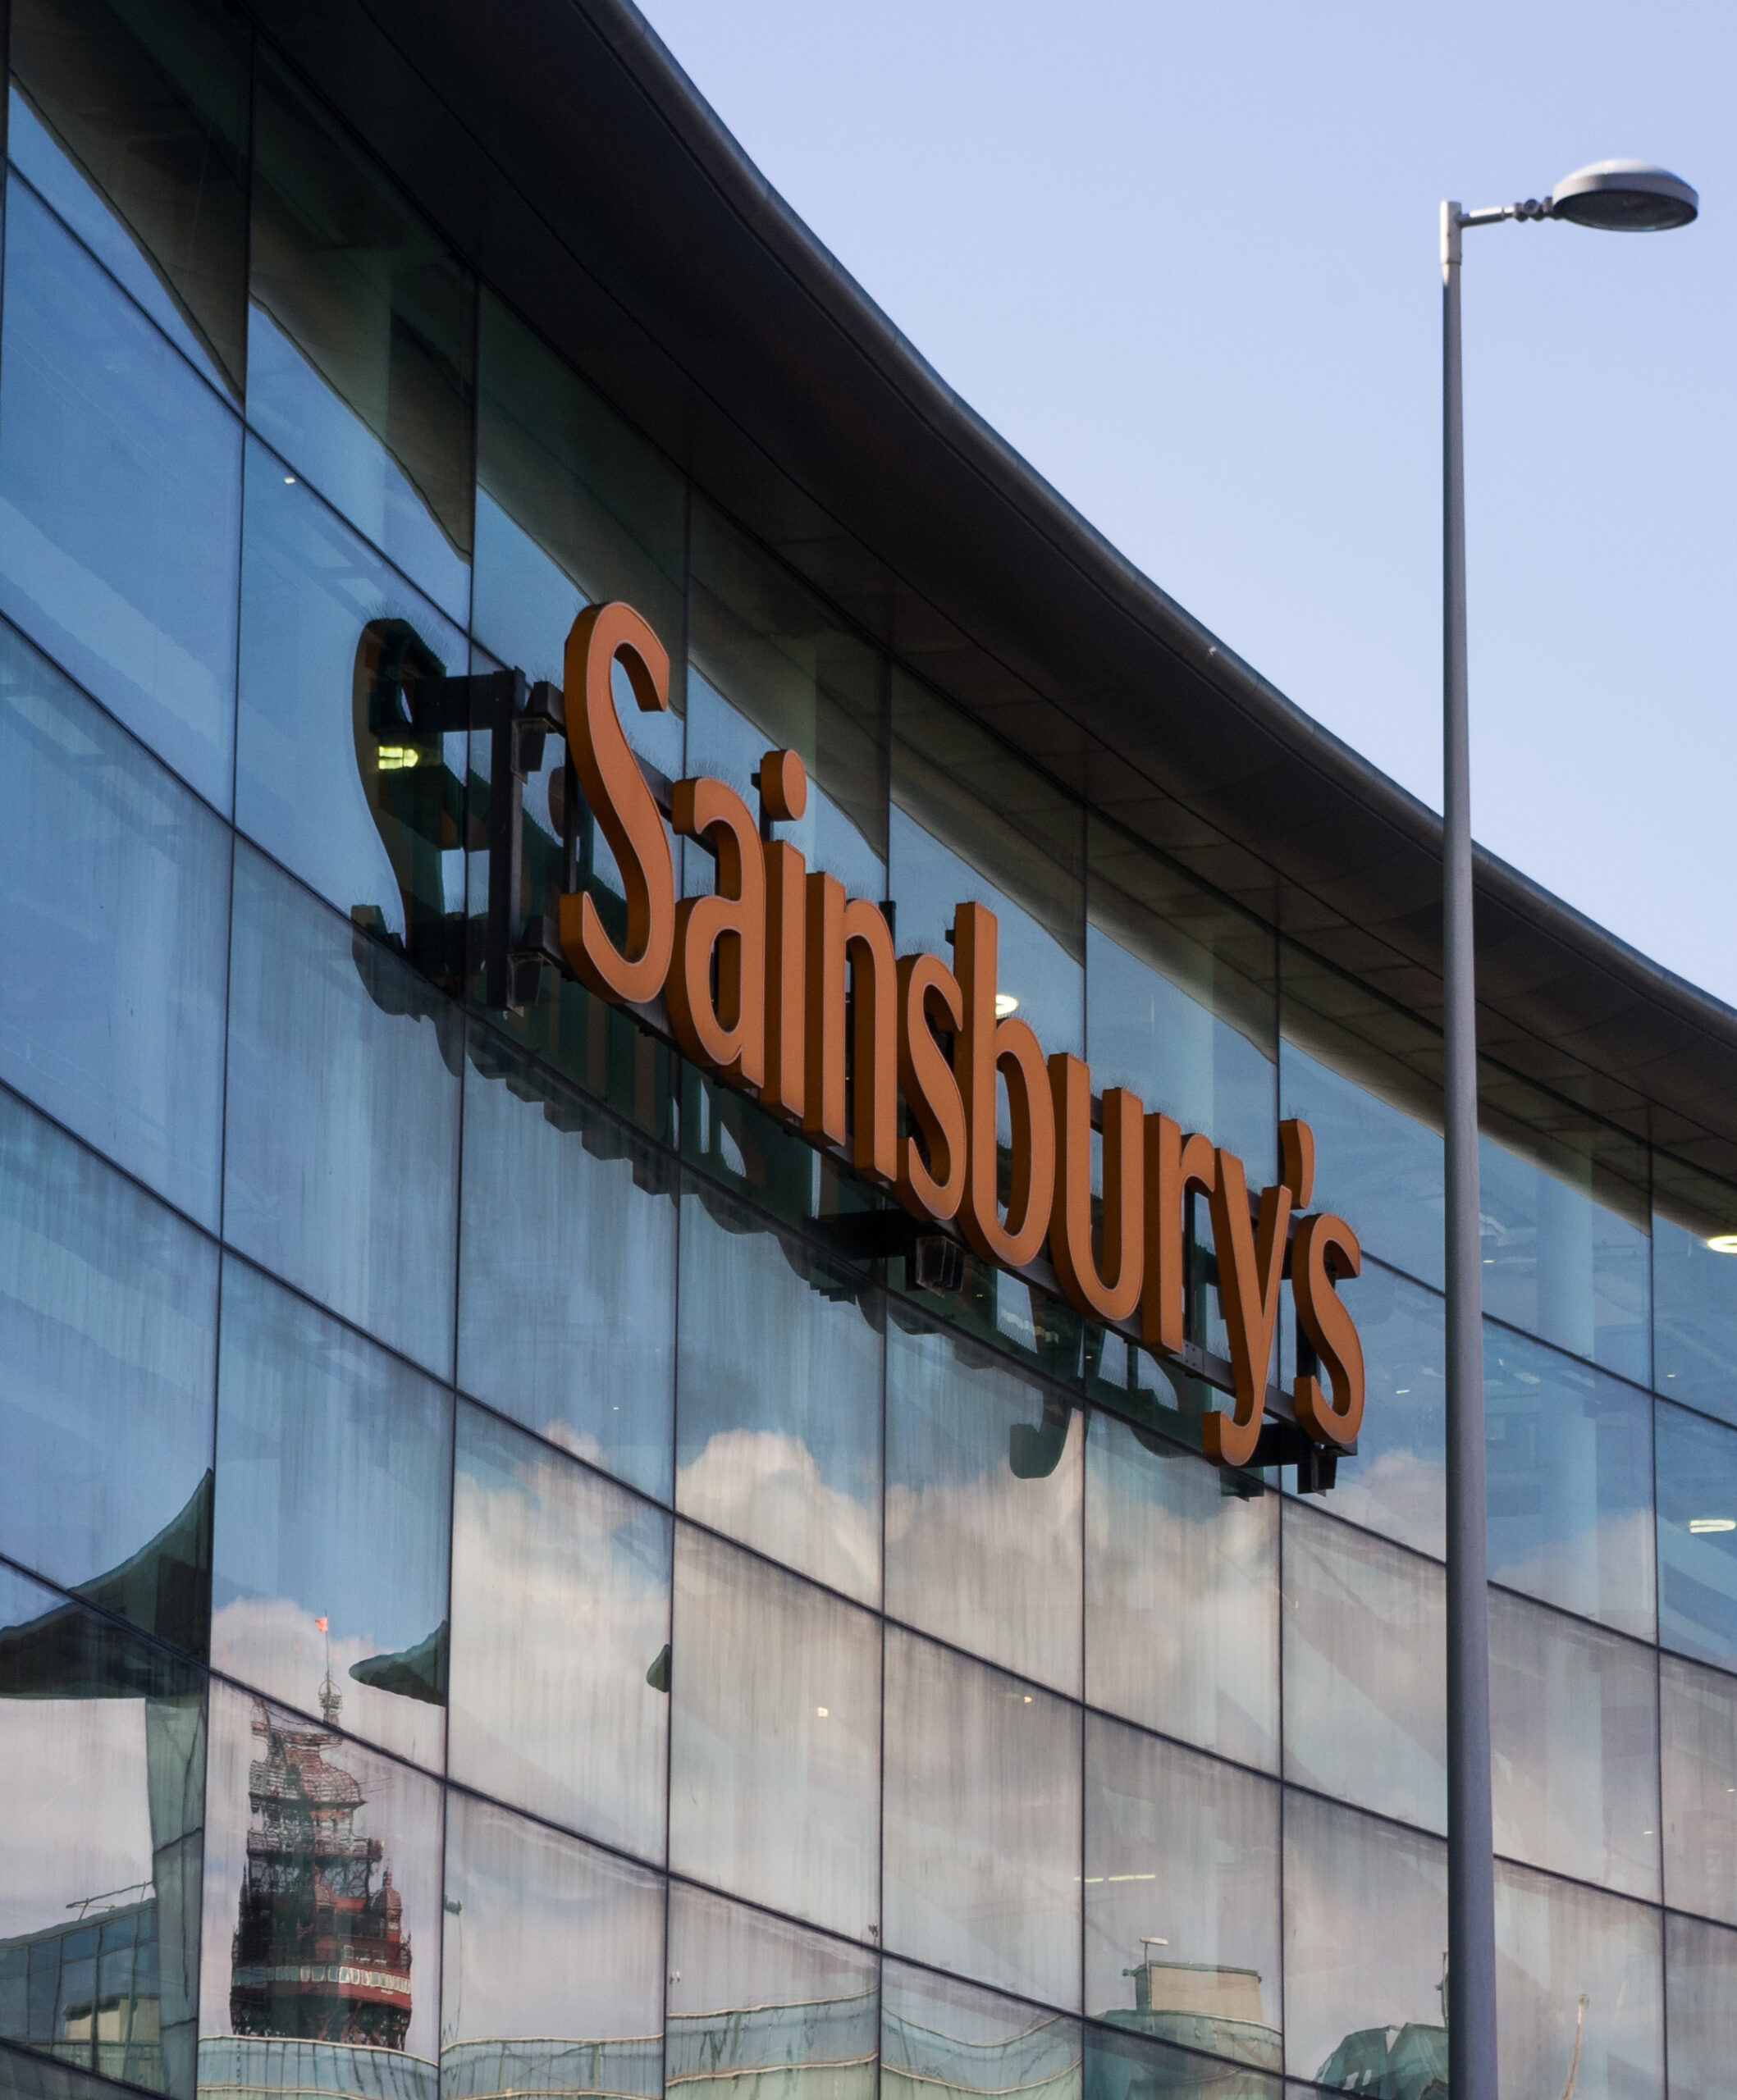 Dział Property Division Sainsbury’s, Wielka Brytania: ograniczenie kosztów dzięki cyfrowemu zarządzaniu nieruchomościami w drugiej co do wielkości sieci handlowej w Wielkiej Brytanii